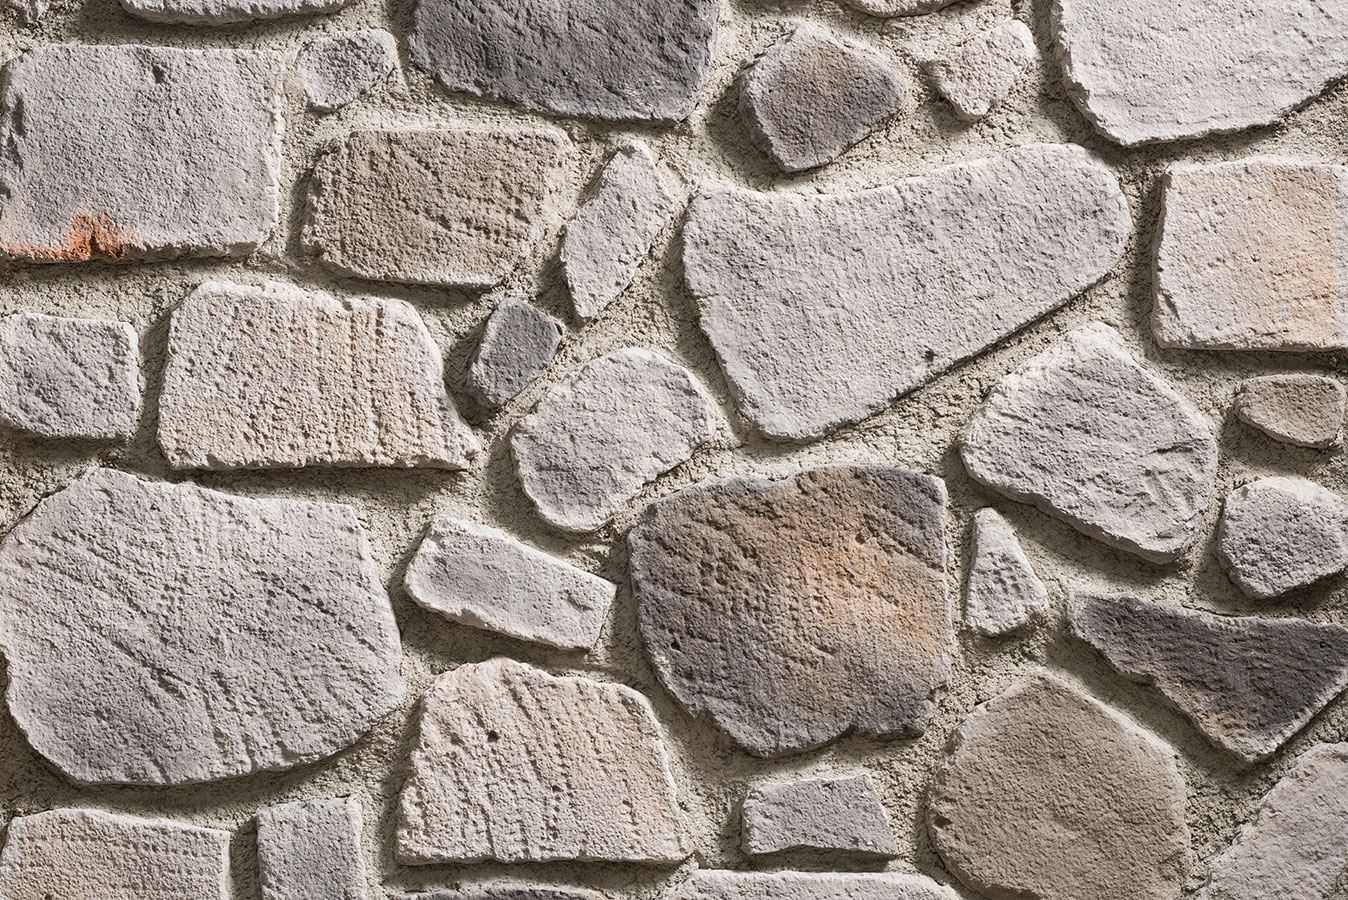 stonewrap matera kül kültür taşı